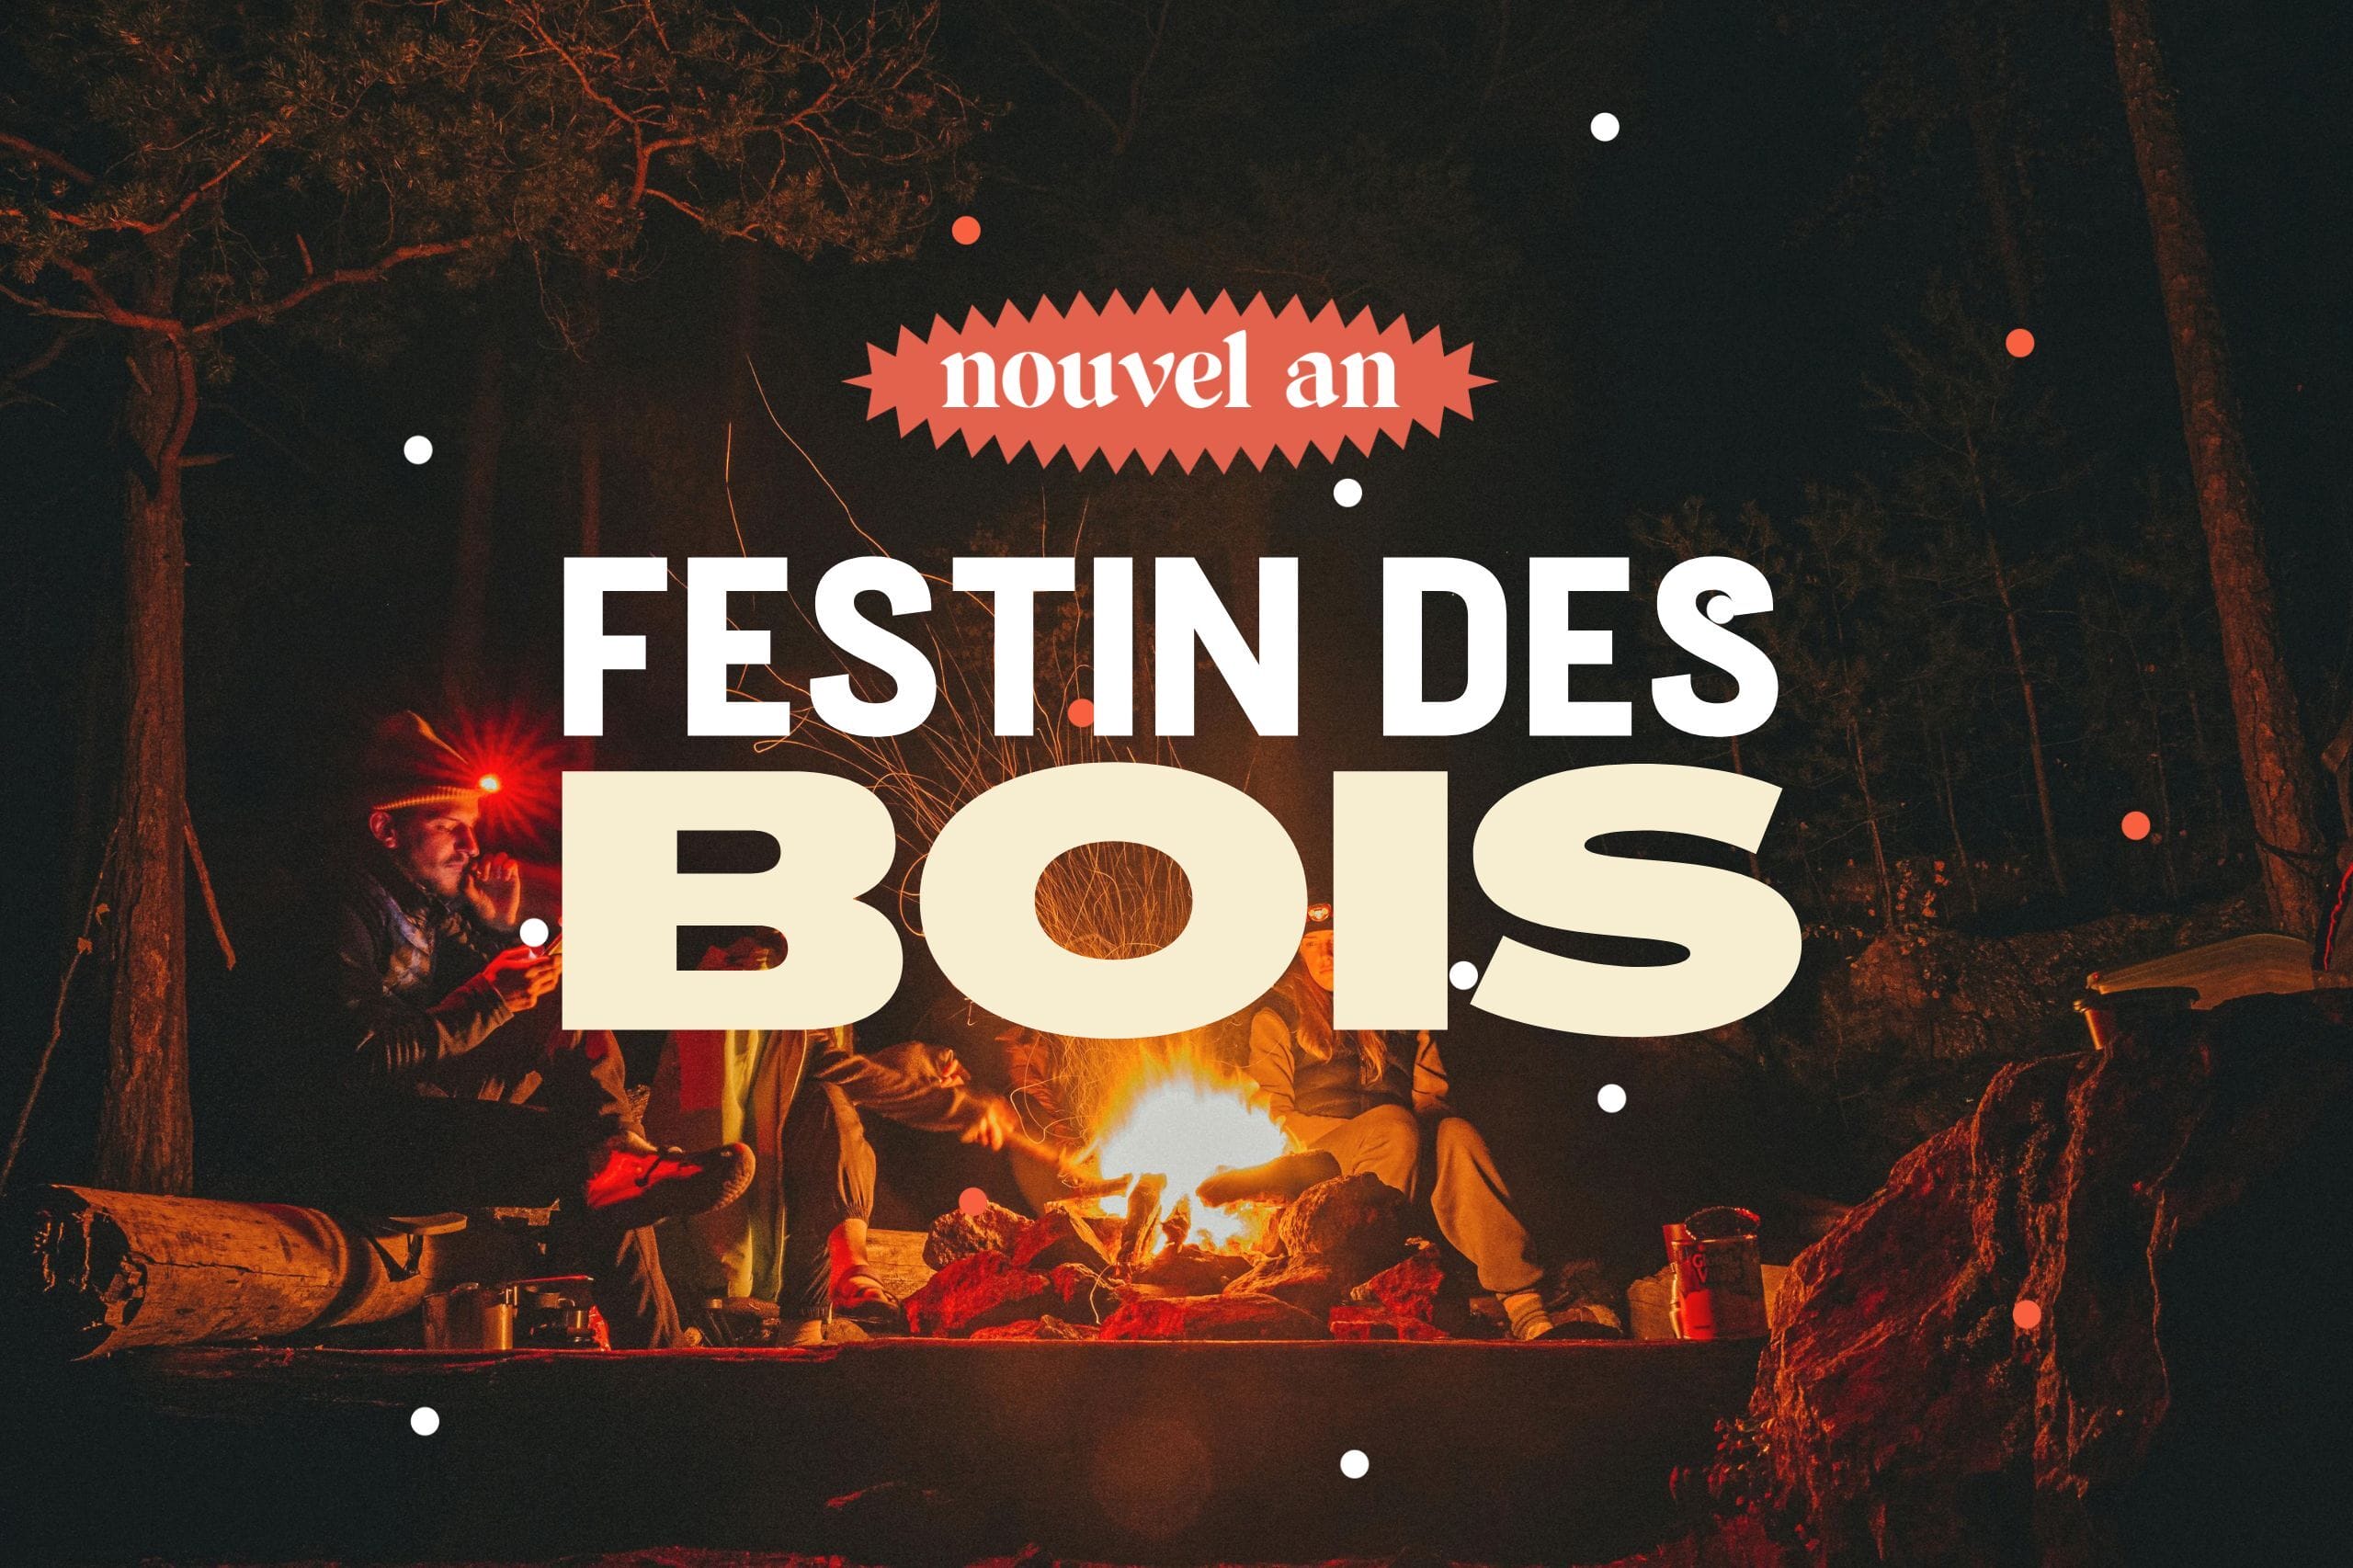 Festin des bois : Nouvel an rando et chasse au trésor gourmande près de Paris